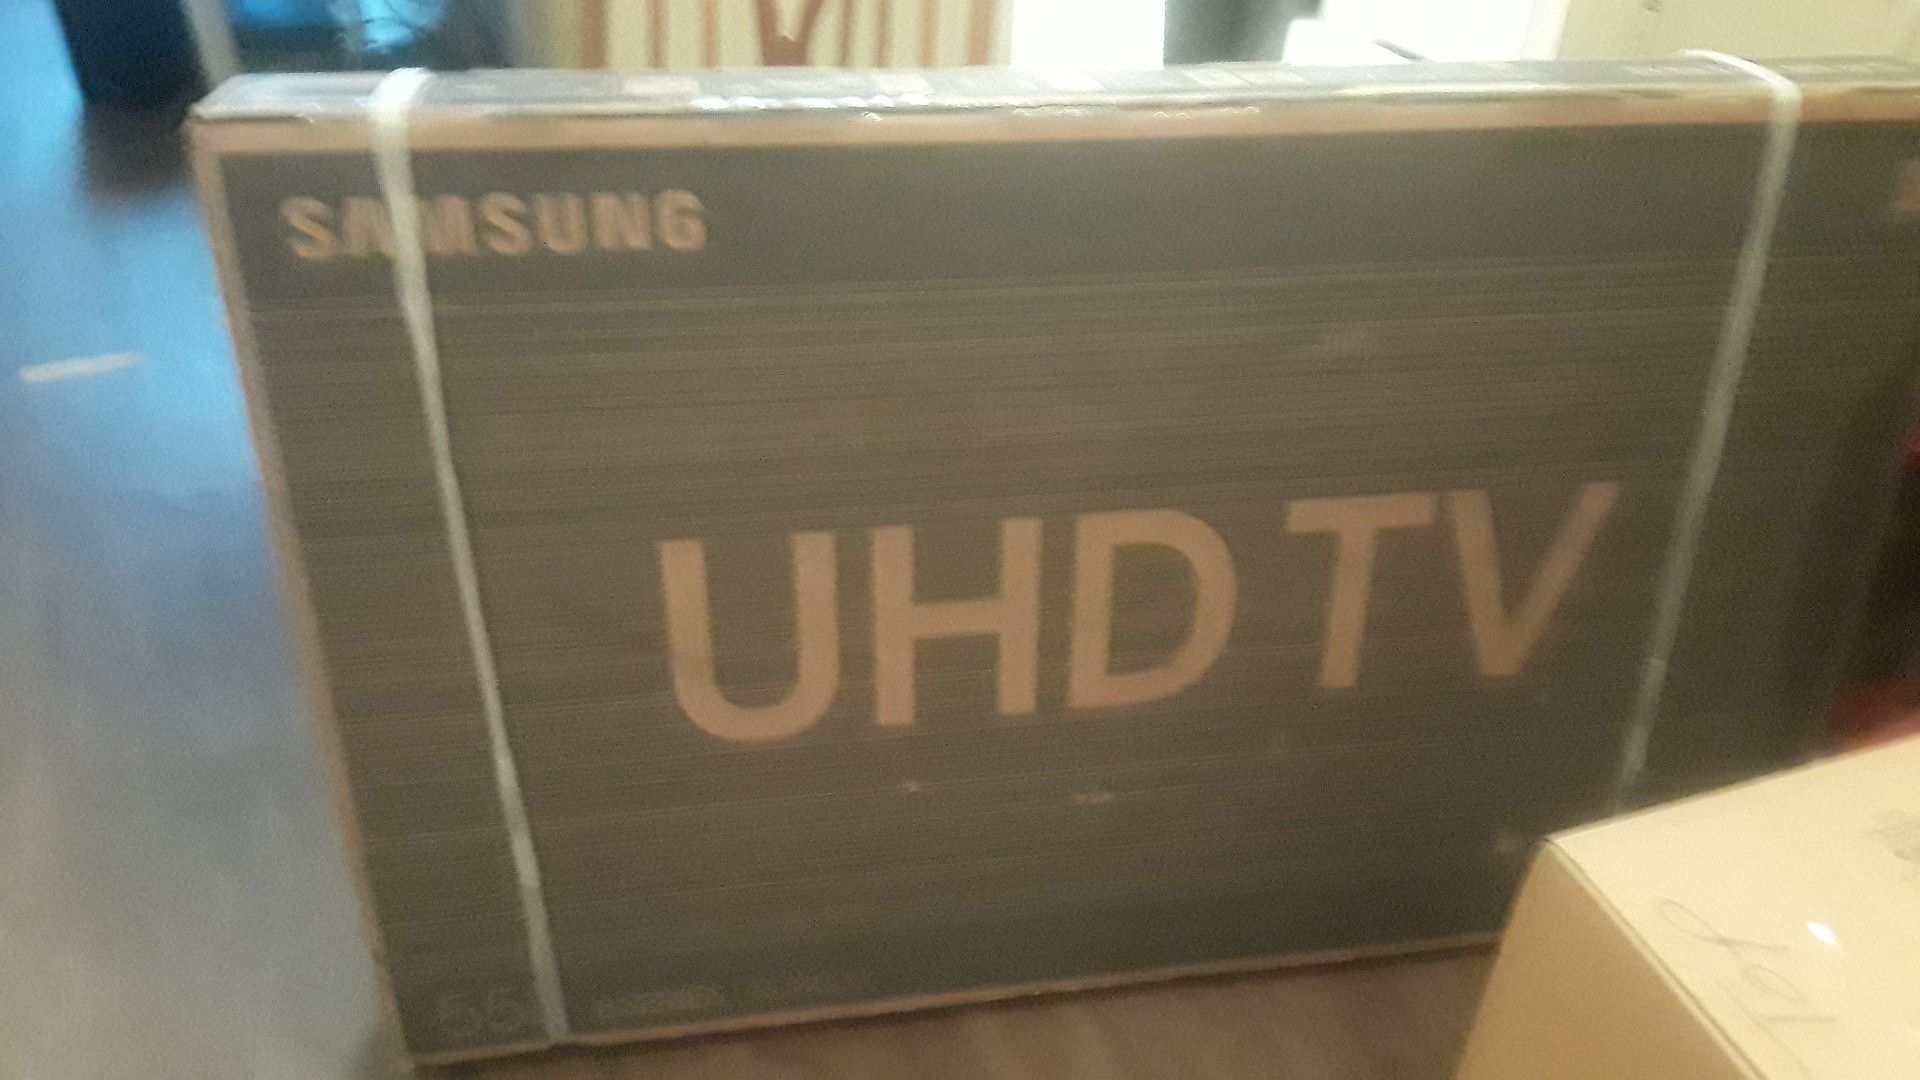 Samsung 55"in the box uhdtv model # UN55RU8000F